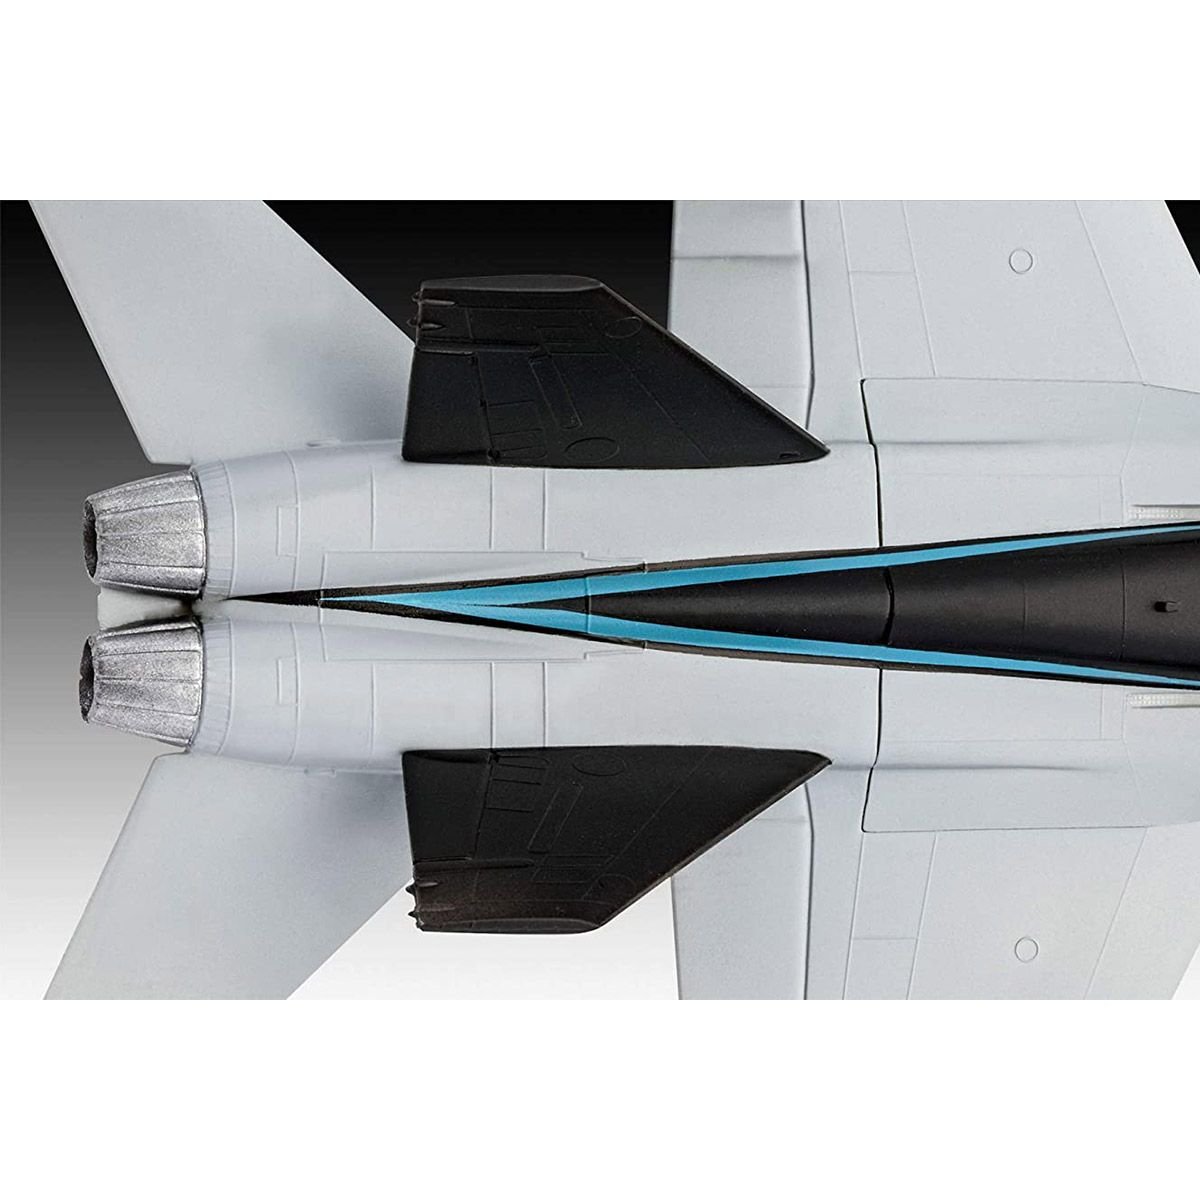 Збірна модель літака Revell Набір F/A-18 Hornet з фільму Top Gun: Maverick, рівень 2, масштаб 1:72, 16 деталей (RVL-64965) - фото 3